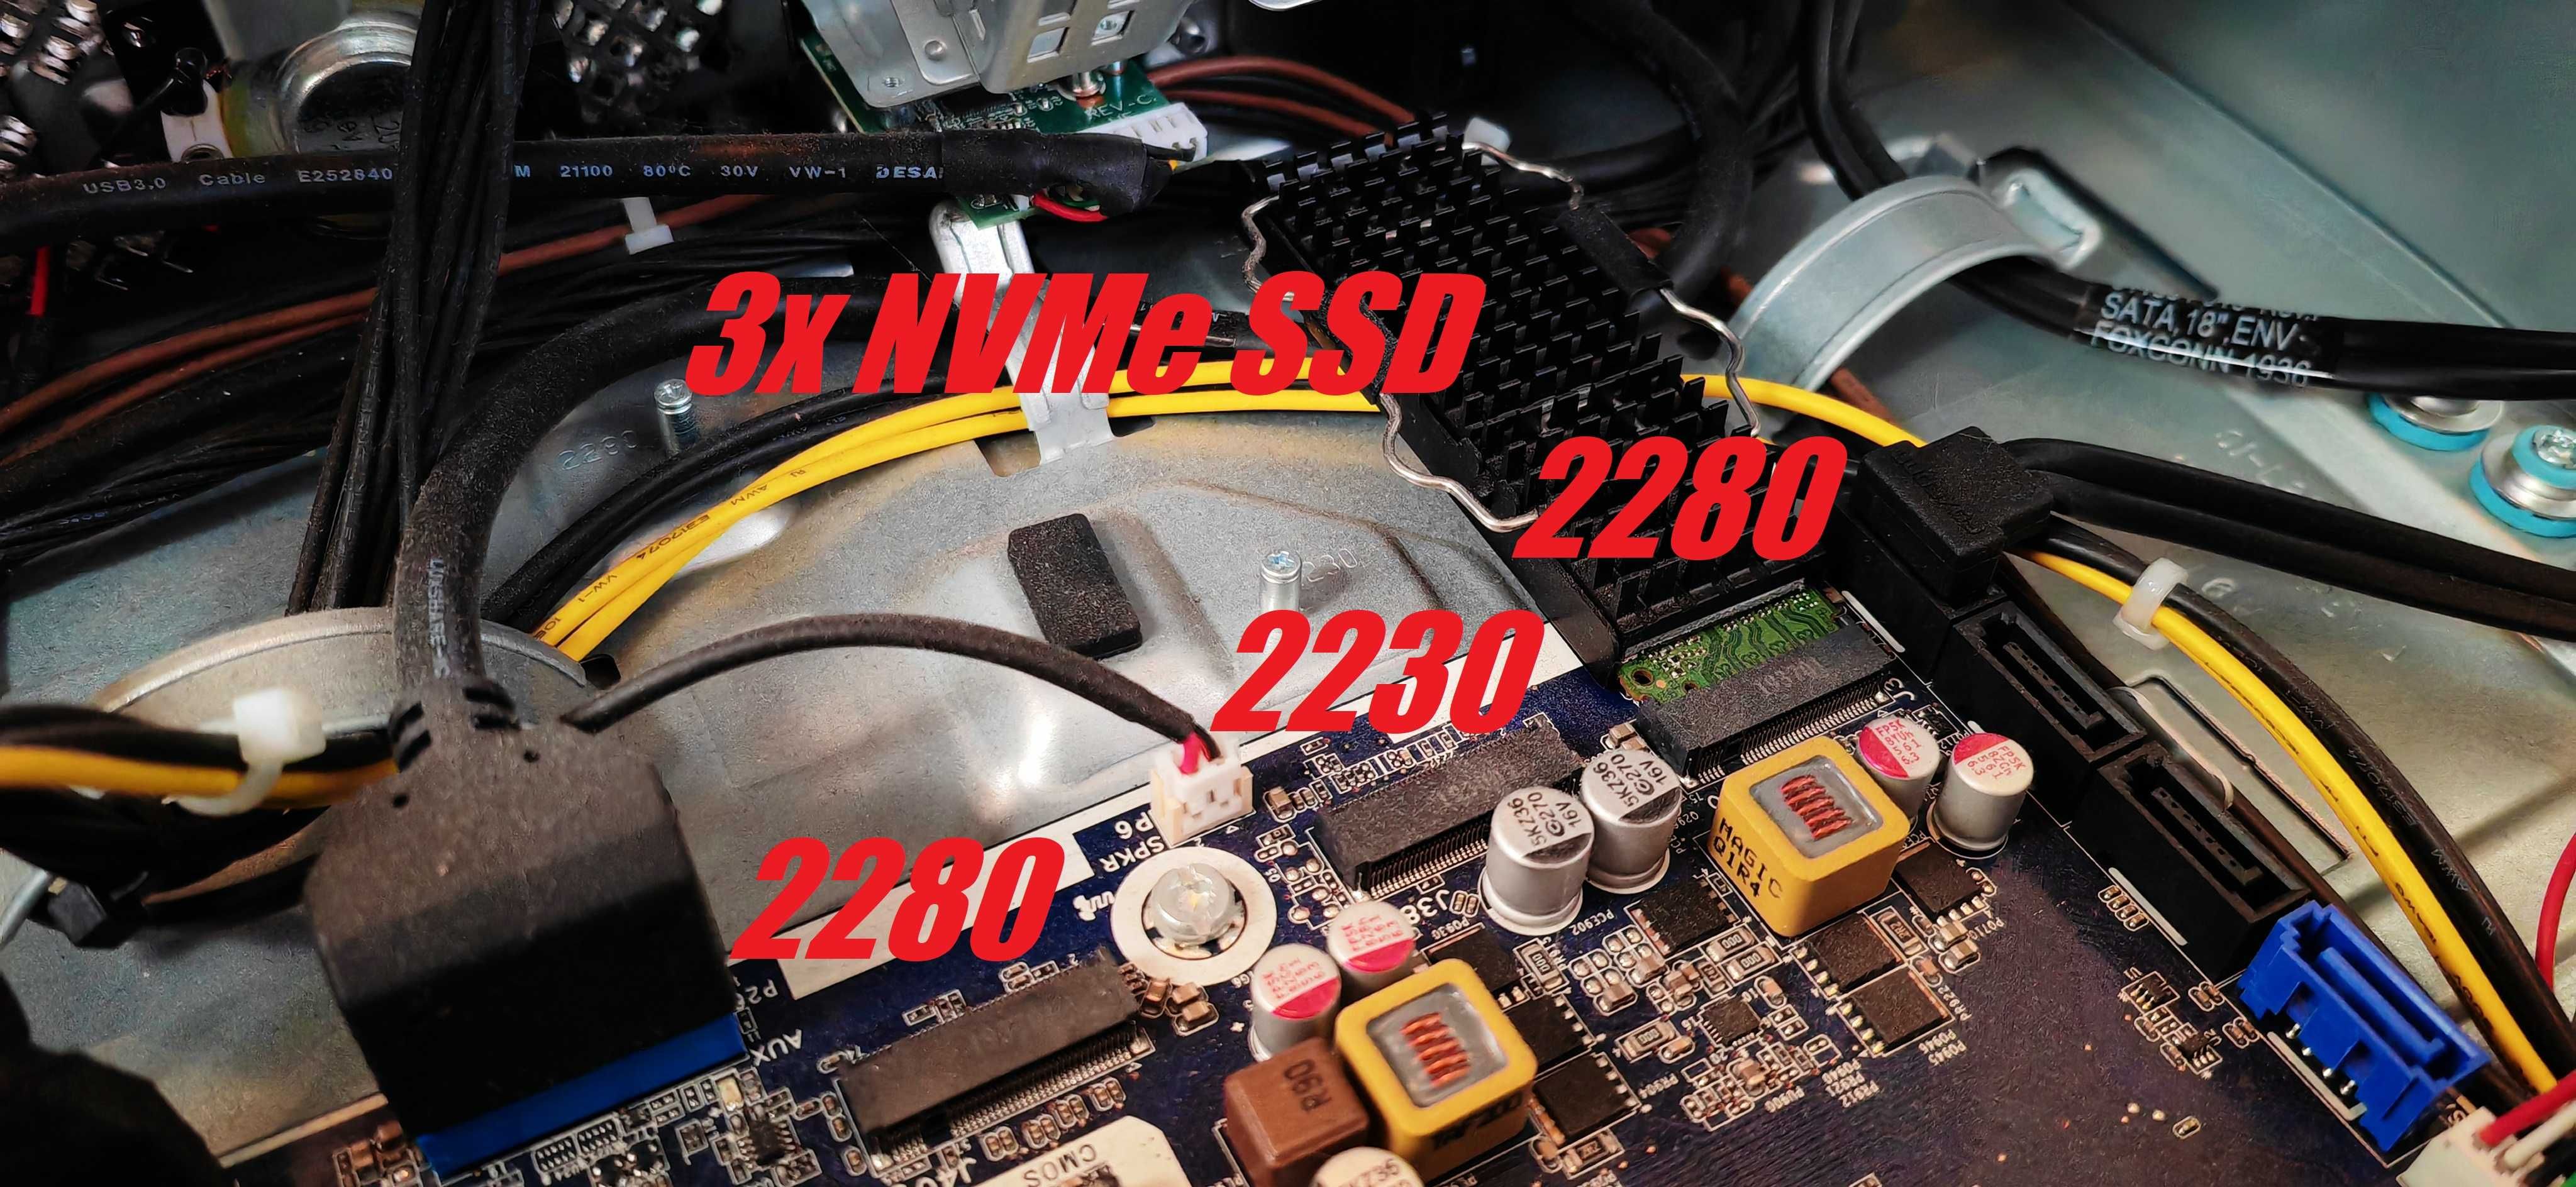 HP Z2 SFF G4/Core i7 8700/NVidia GTX 1050Ti 4GB/16GB RAM/512GB NVMe